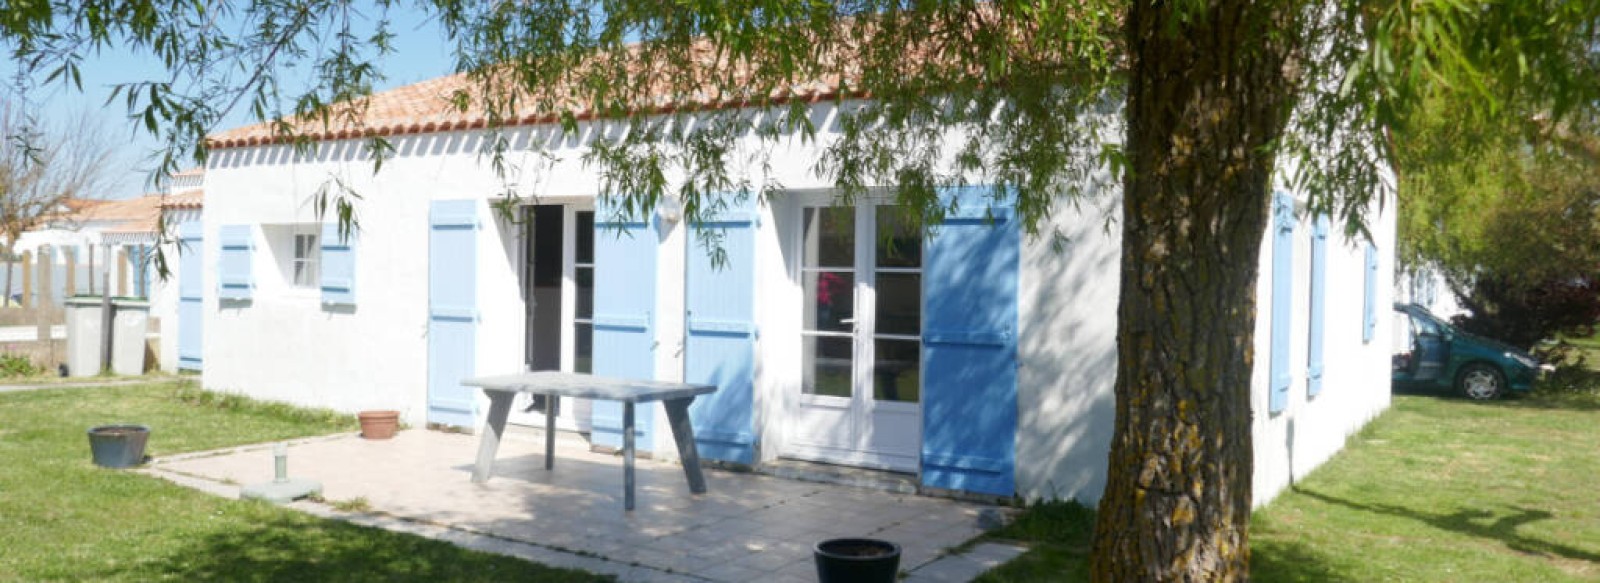 Maison de vacances a Barbatre, a l'entree de l'ile de Noirmoutier